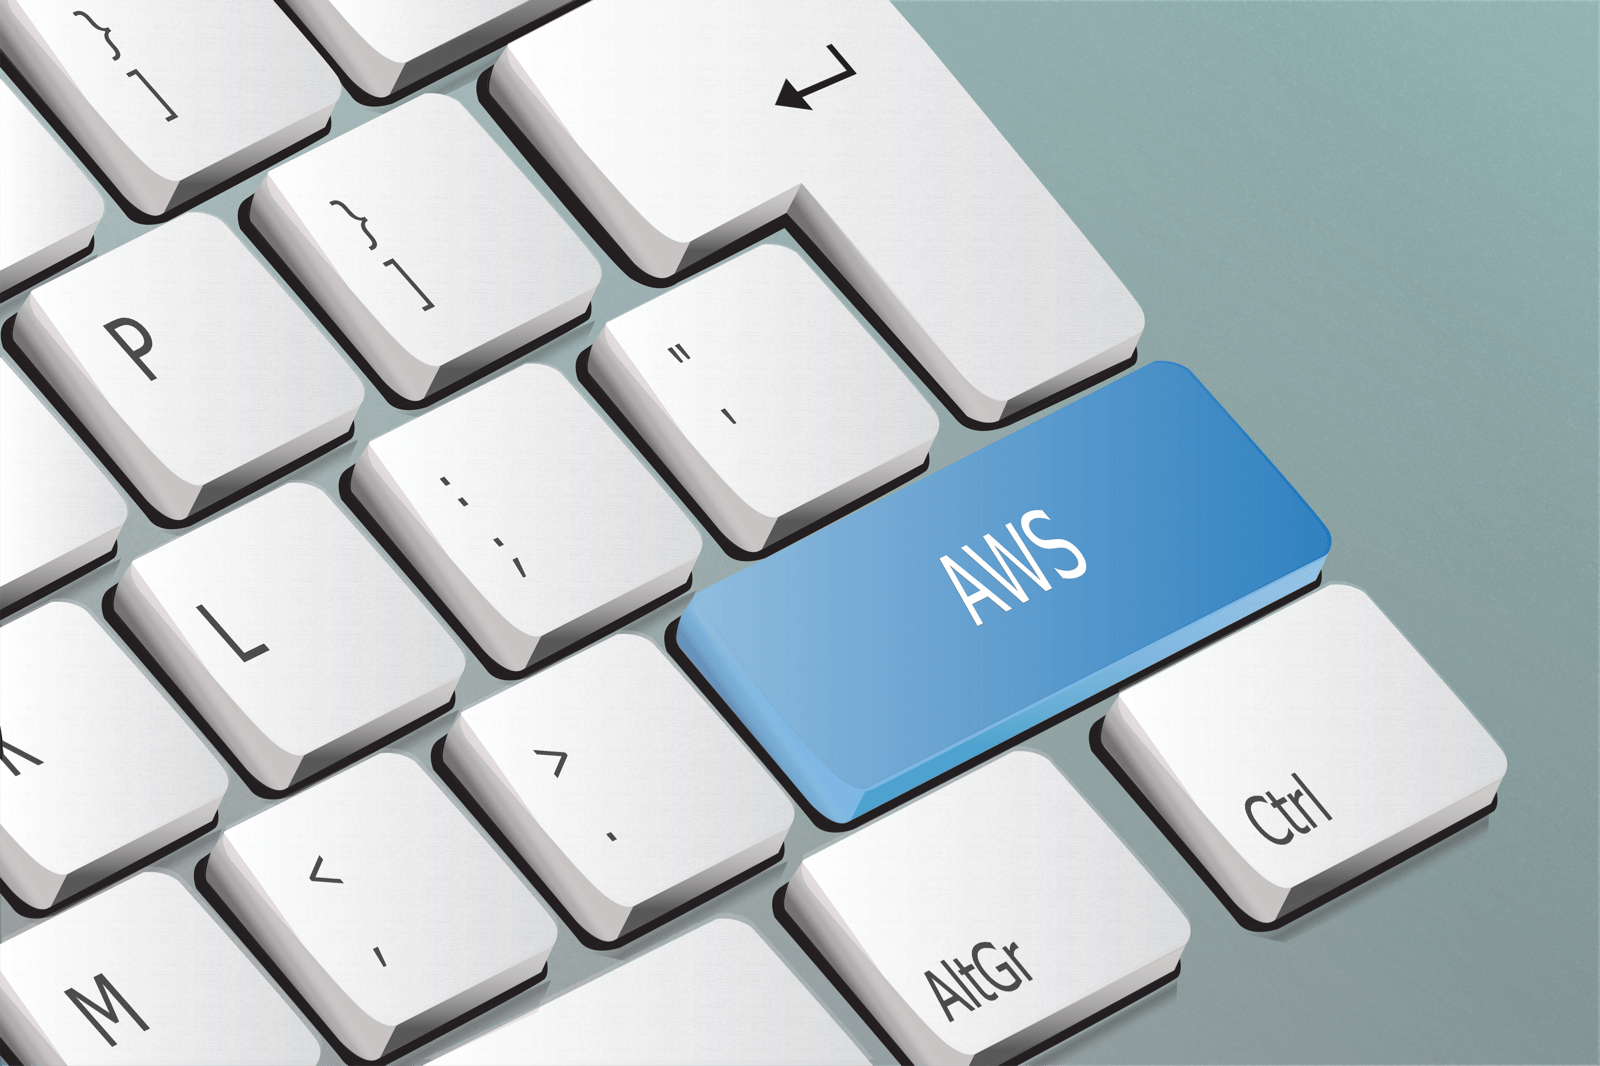 AWSと書かれたキーボードのボタン